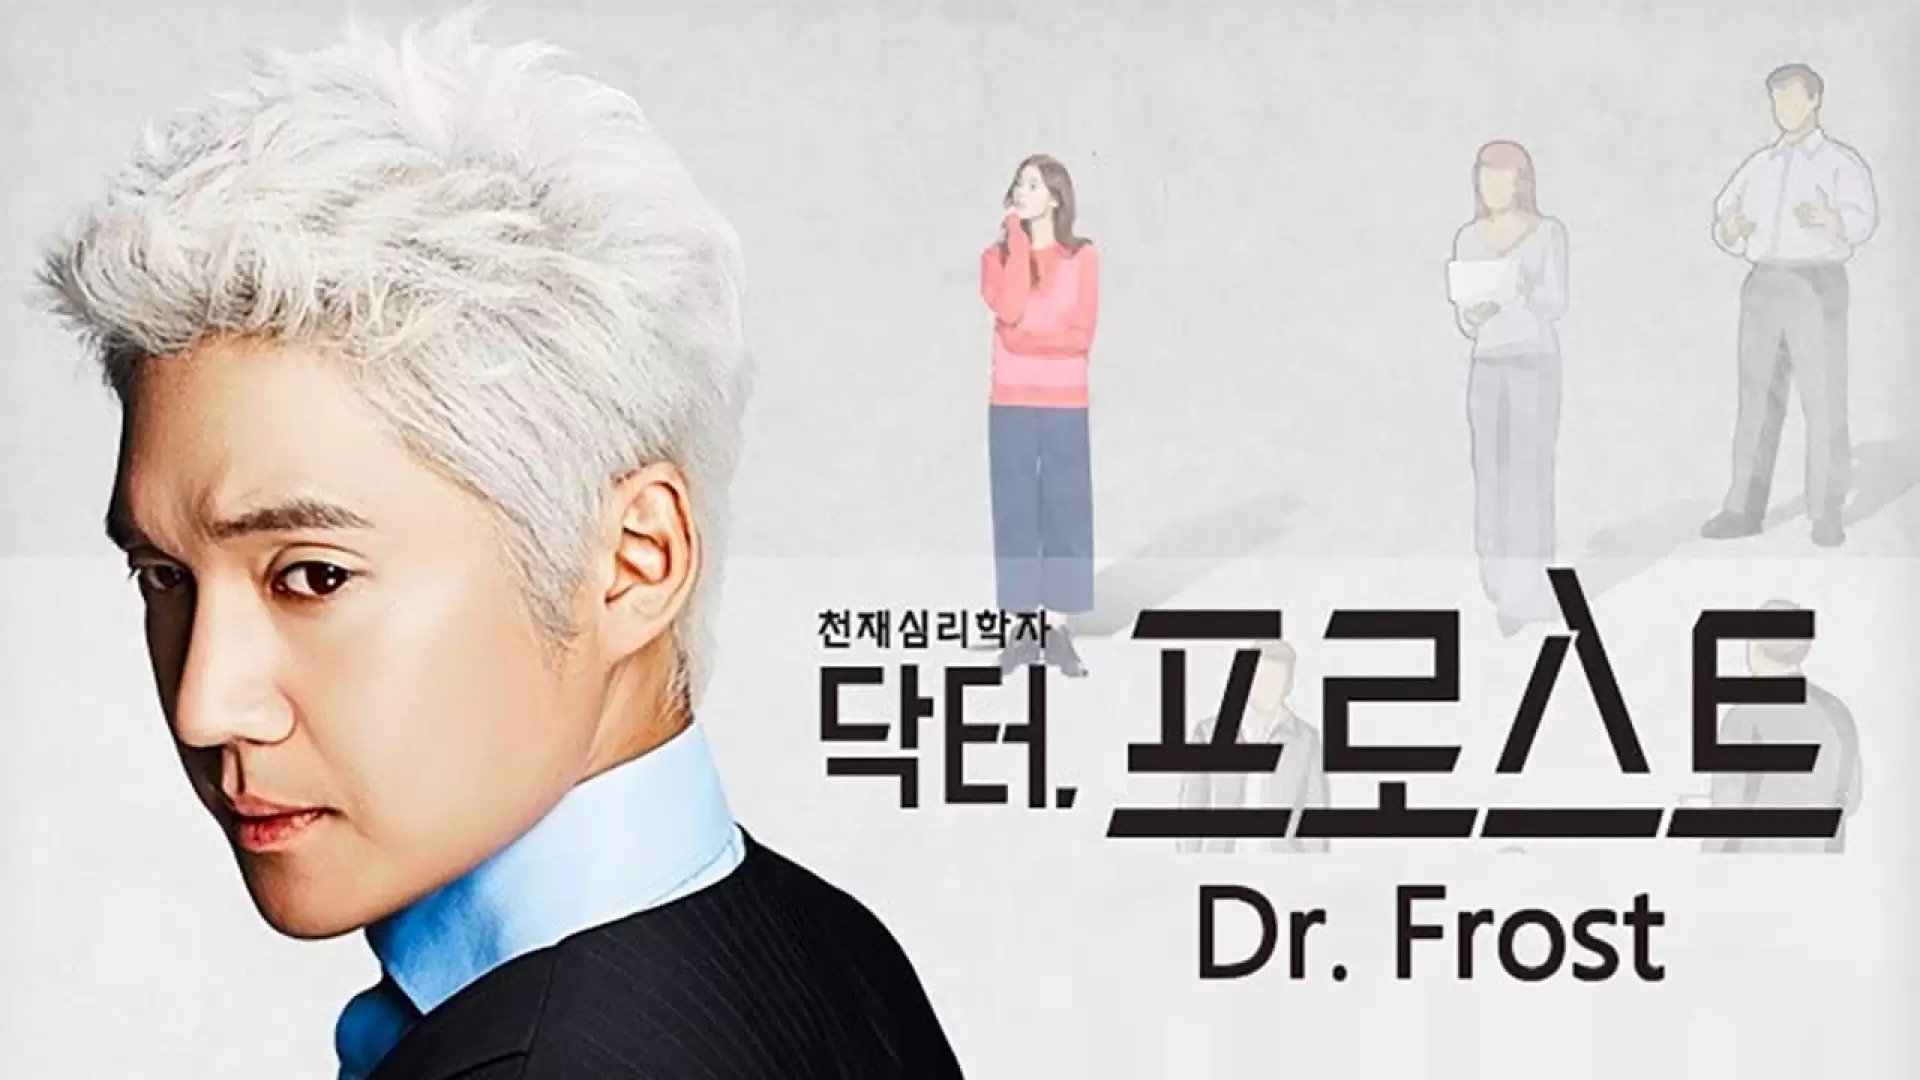 دانلود سریال Dr. Frost 2014